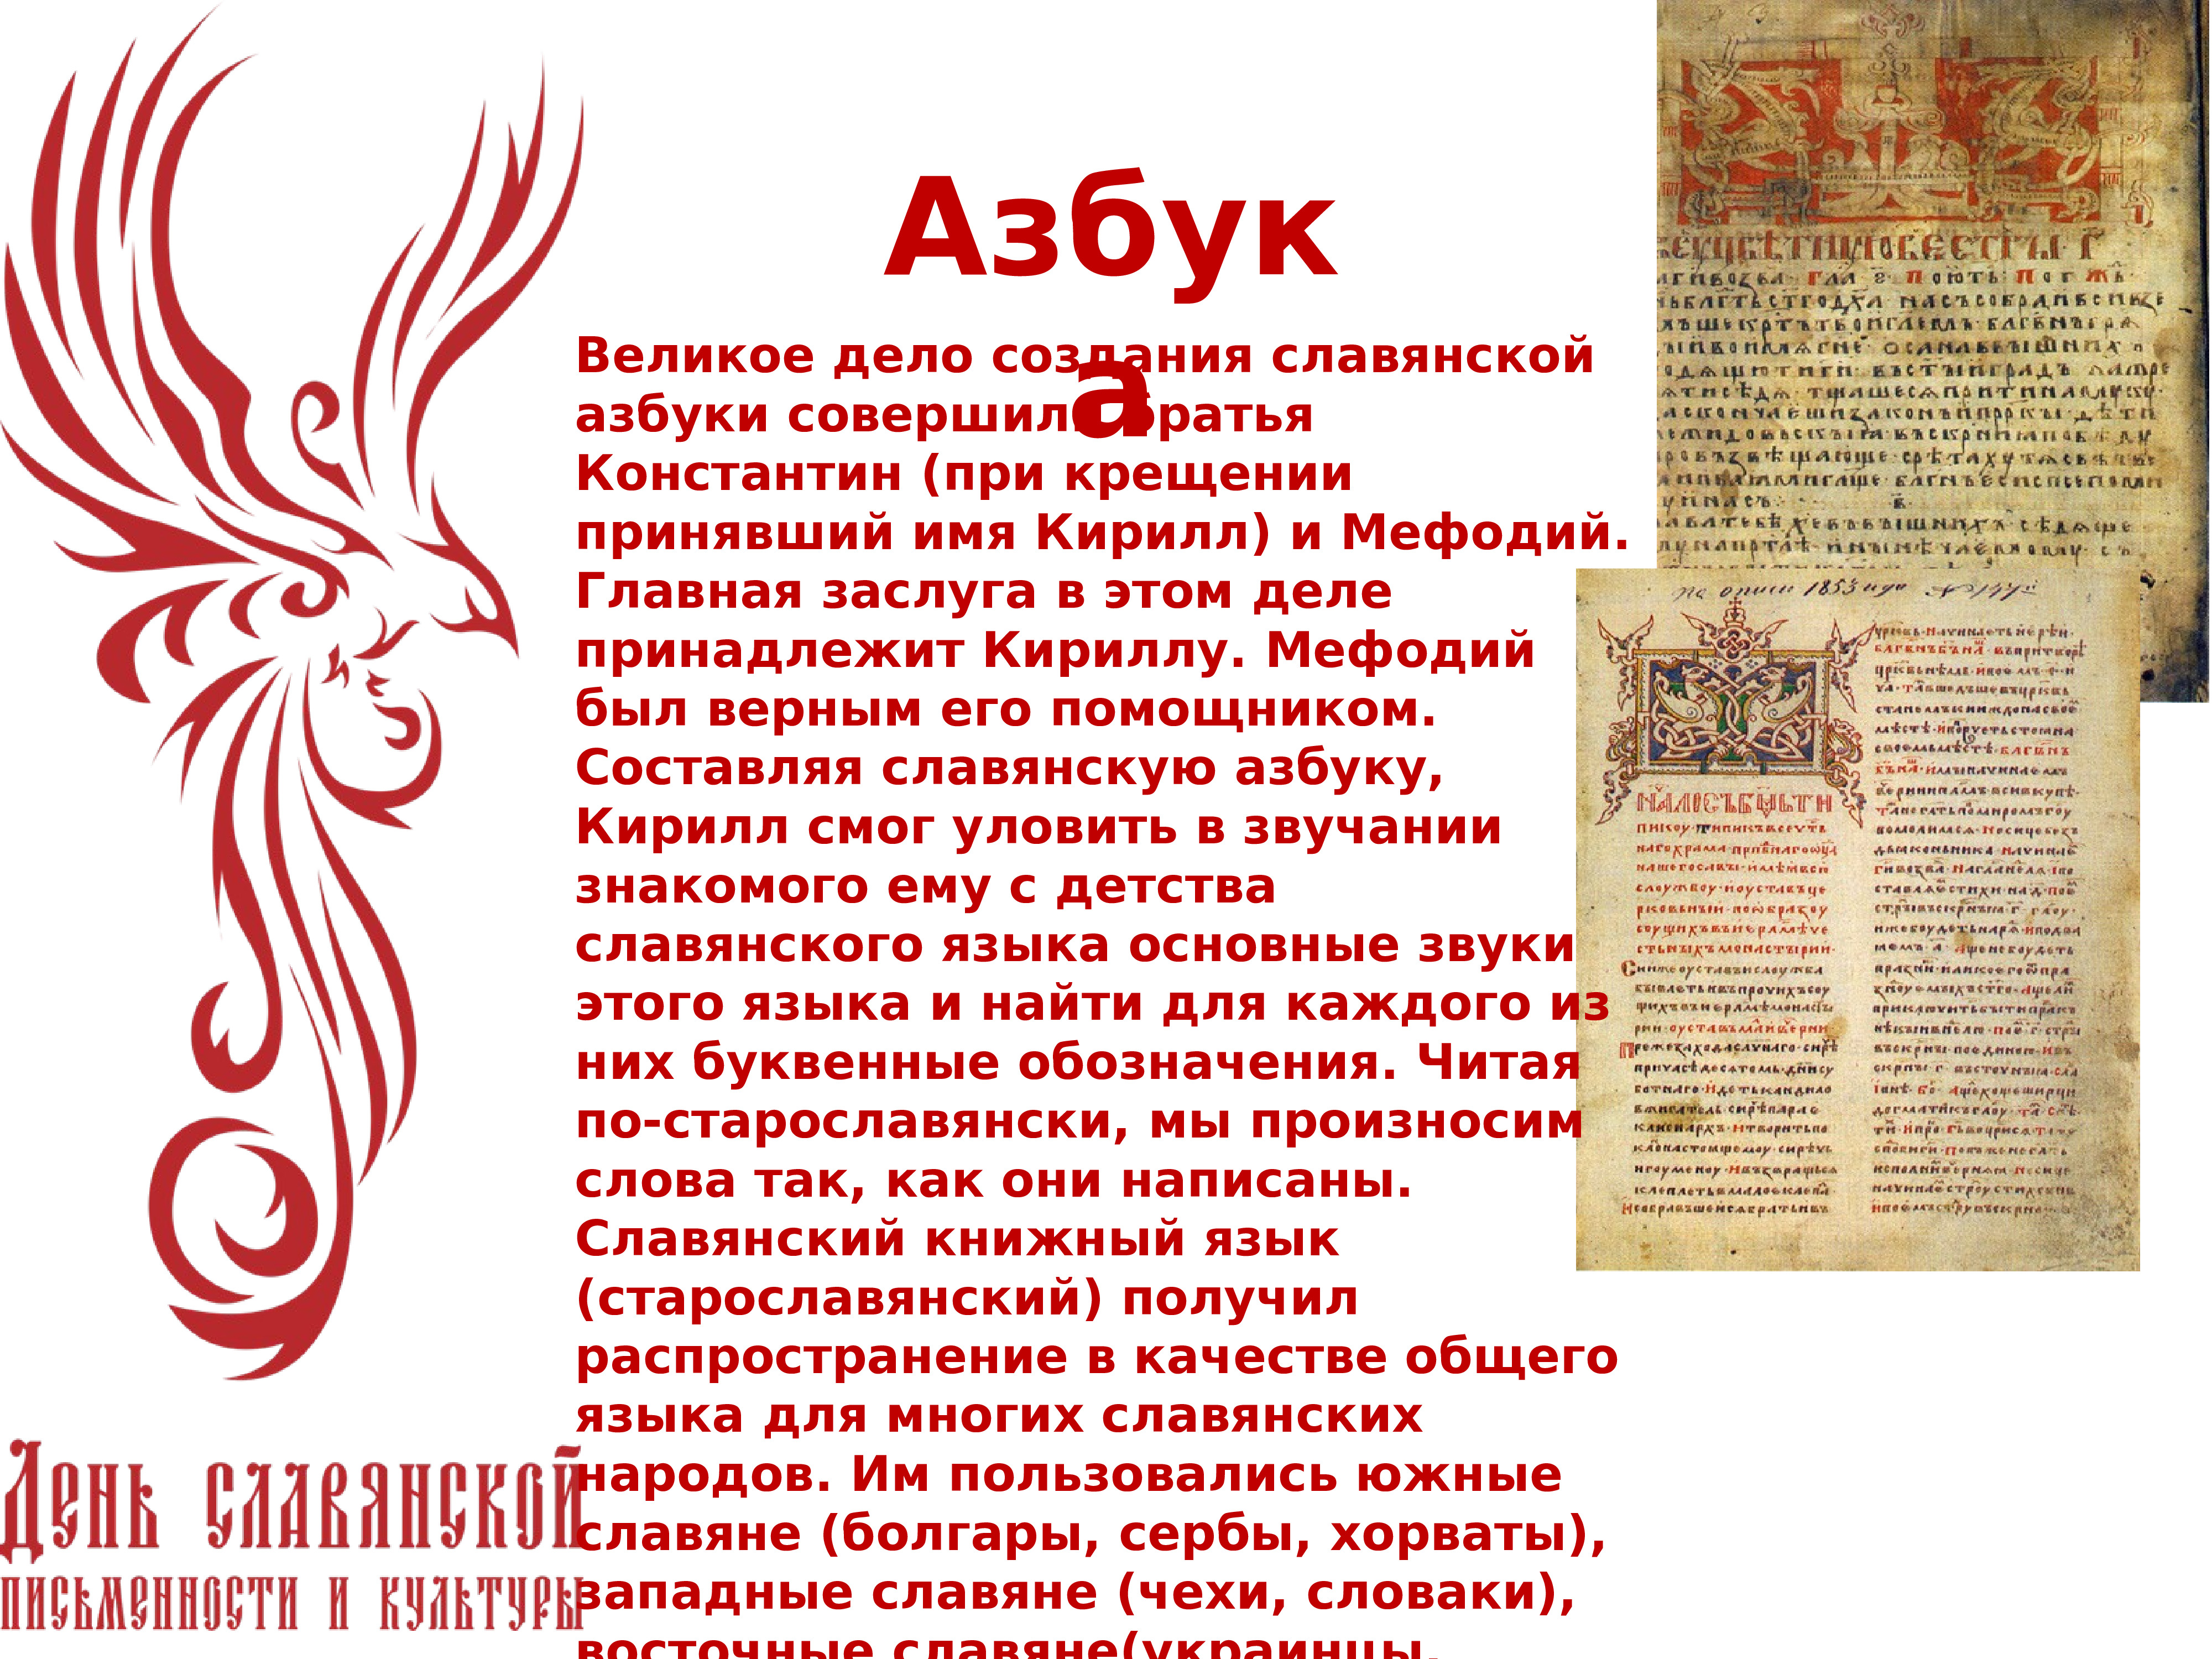 Славянская письменность